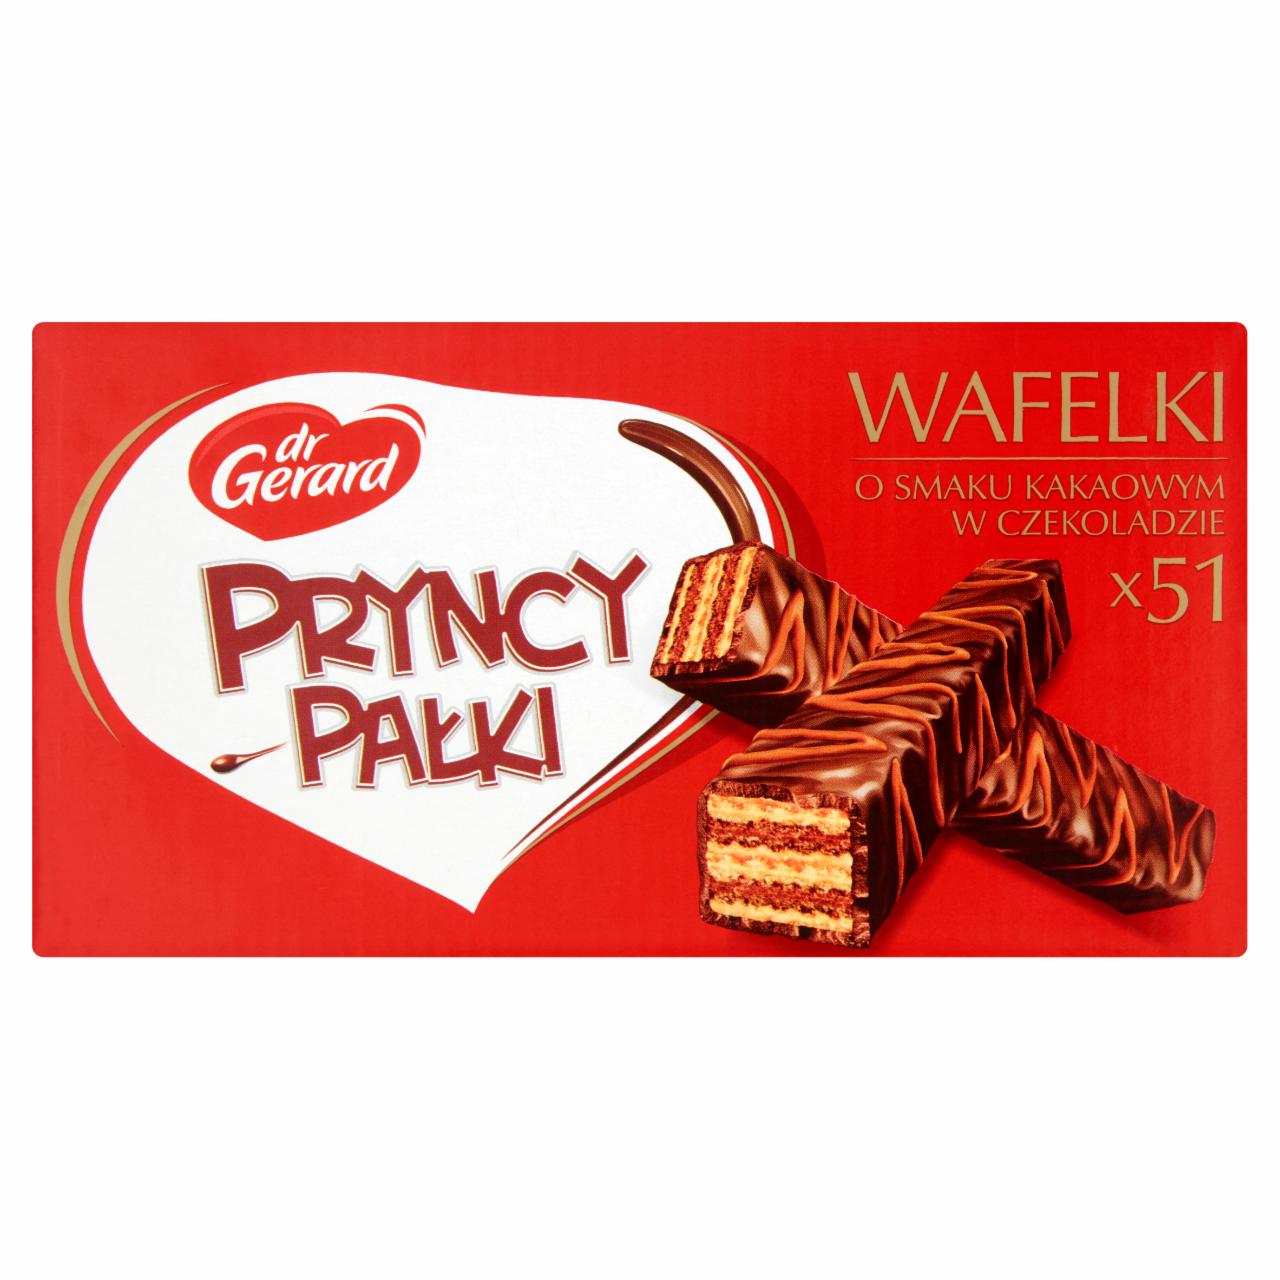 Zdjęcia - dr Gerard PryncyPałki Classic Wafelki o smaku kakaowym w czekoladzie 1,071 kg (51 sztuk)